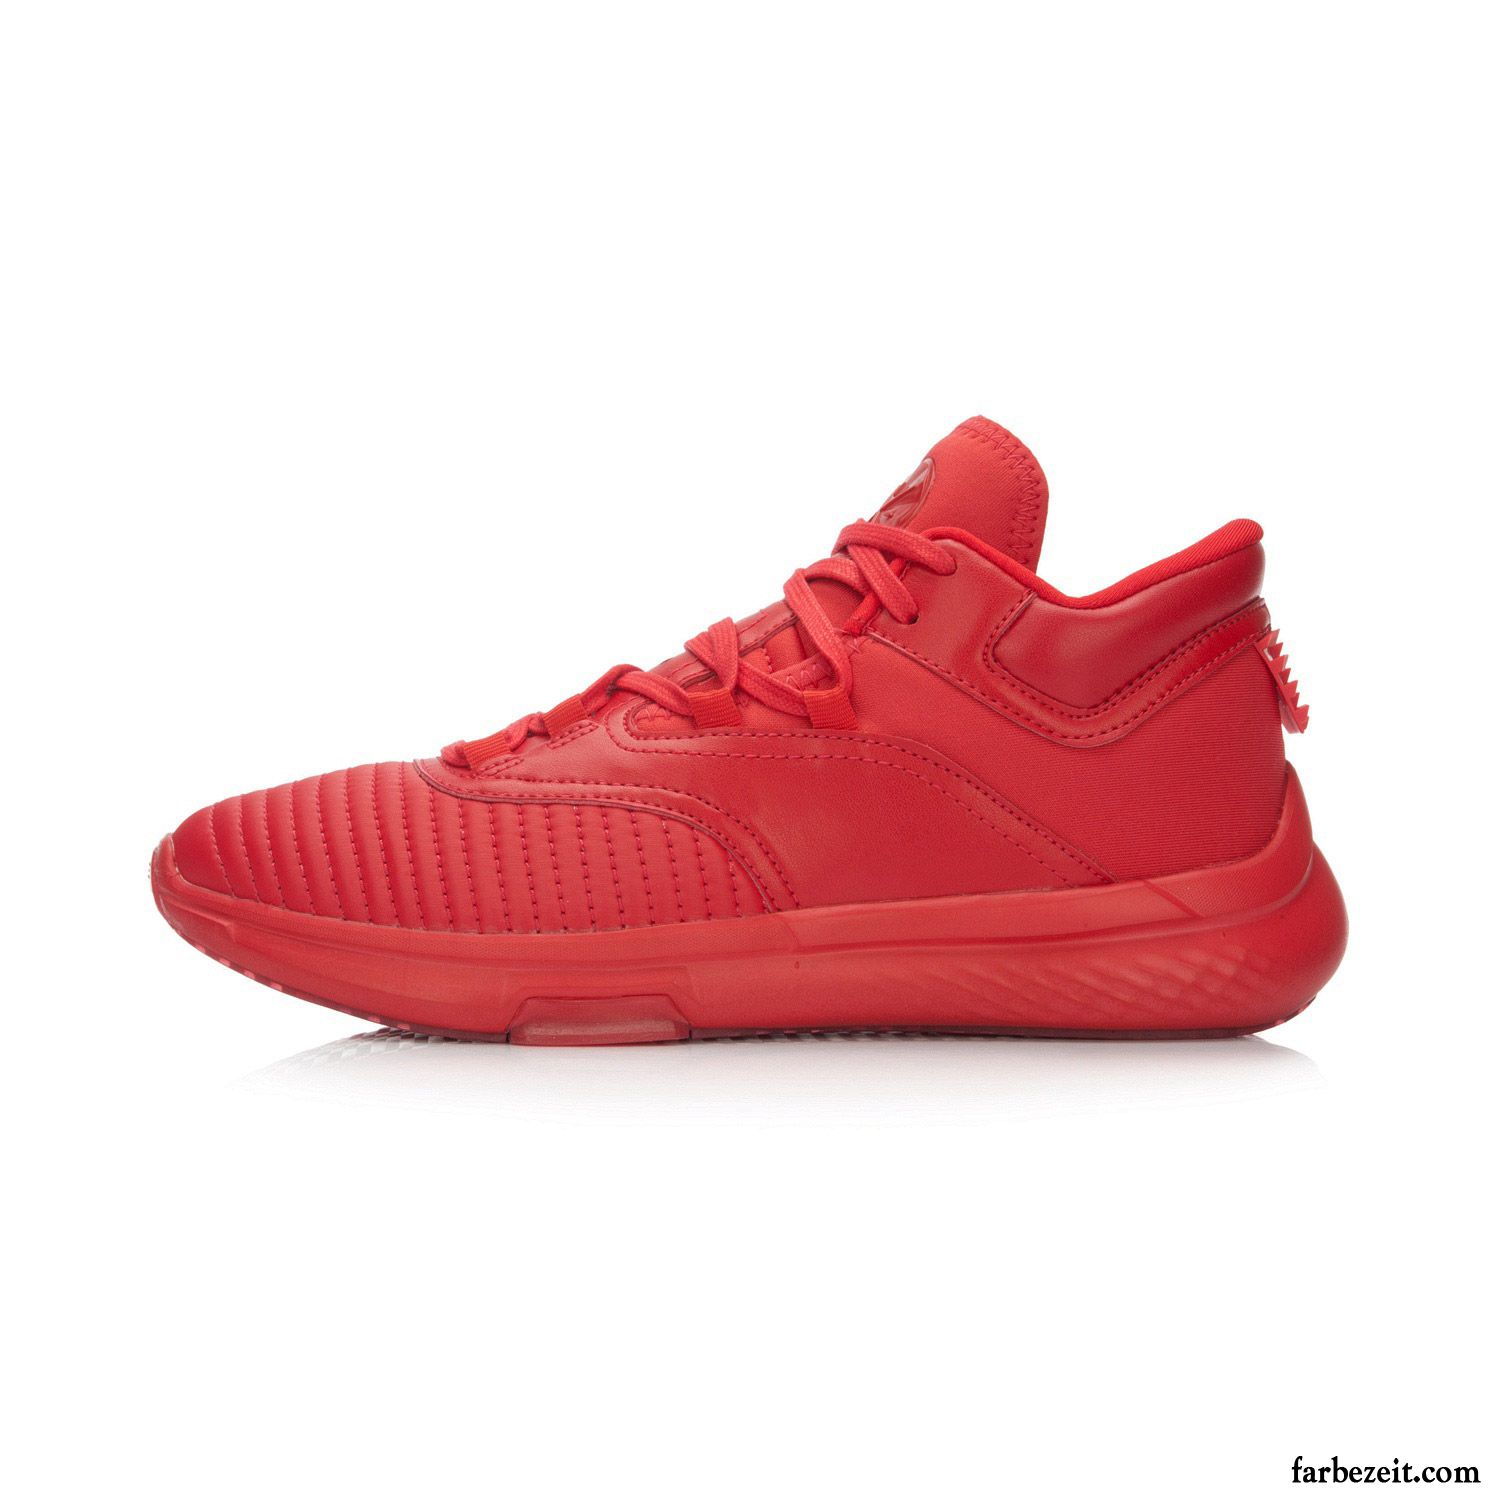 Rote Lederschuhe Herren Schuhe Basketball Sportschuhe Casual Kaufen